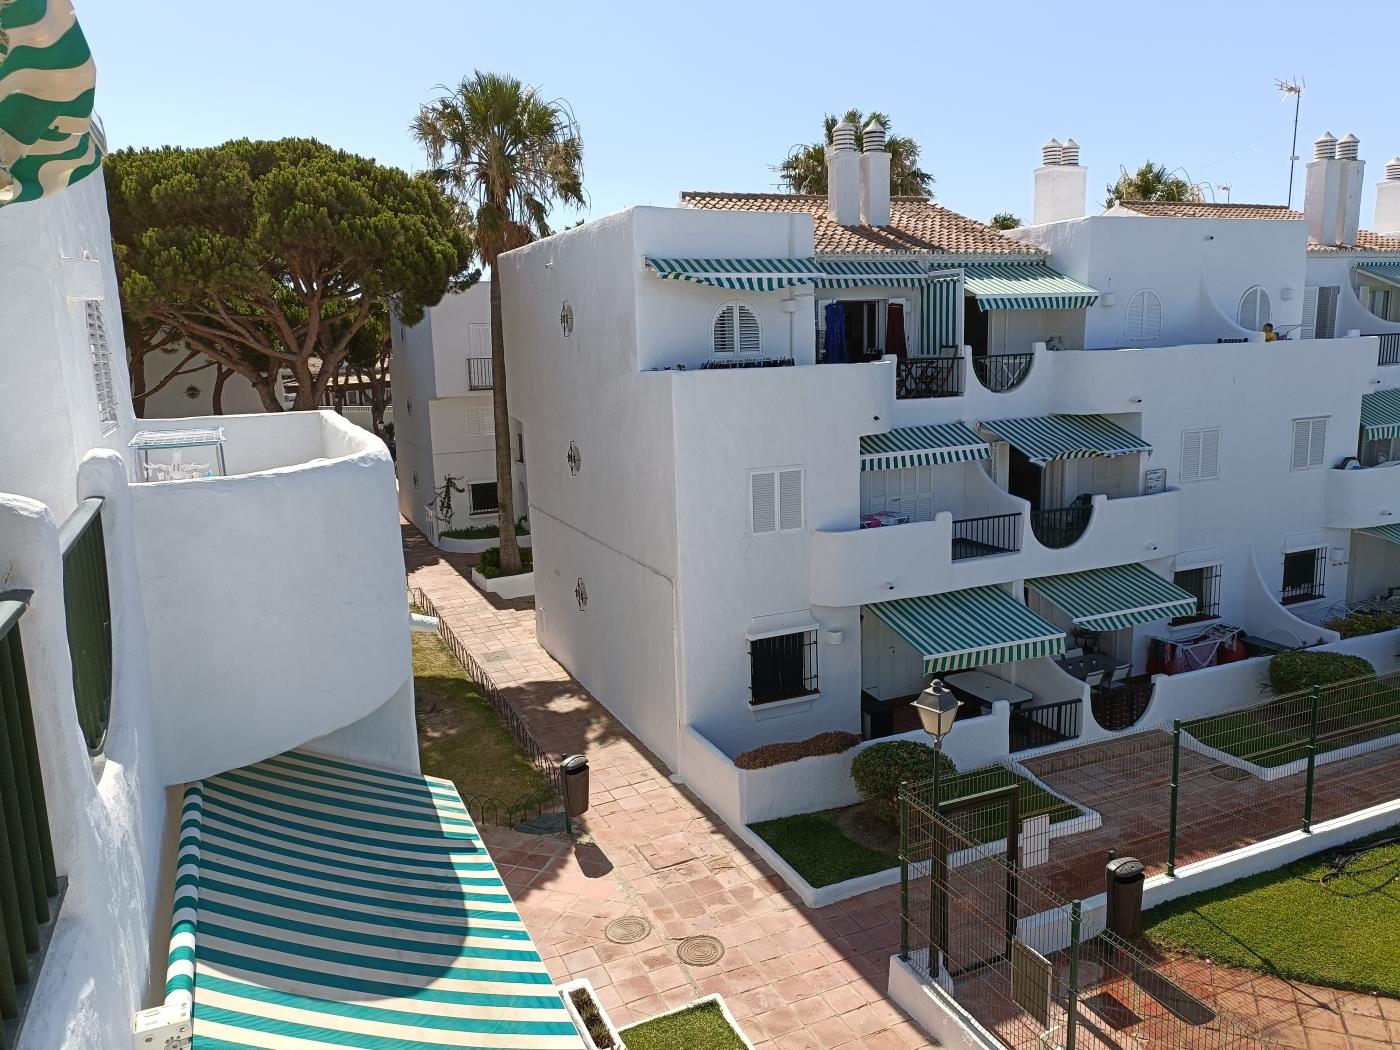 Ref ARIES3. Apartamento de dos dormitorios en planta baja en Chiclana de la frontera (Cádiz)